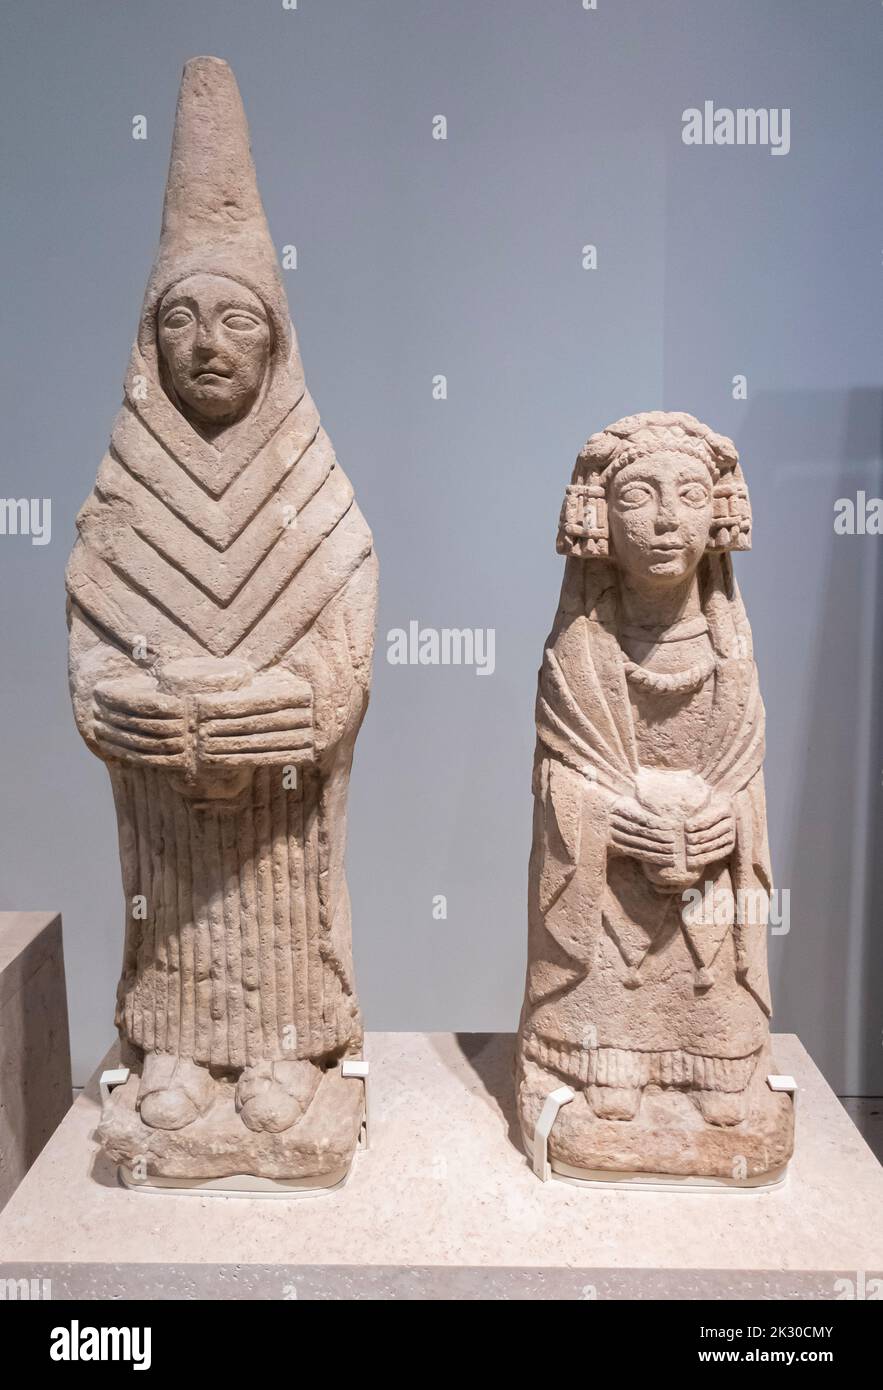 Weibliche Offeranzfiguren - Kalkstein - iberische Kultur - 3. - 2. Jahrhundert v. Chr. - Schrein von Cerro de los Santos - Montealegre del castillo, Albacete Stockfoto